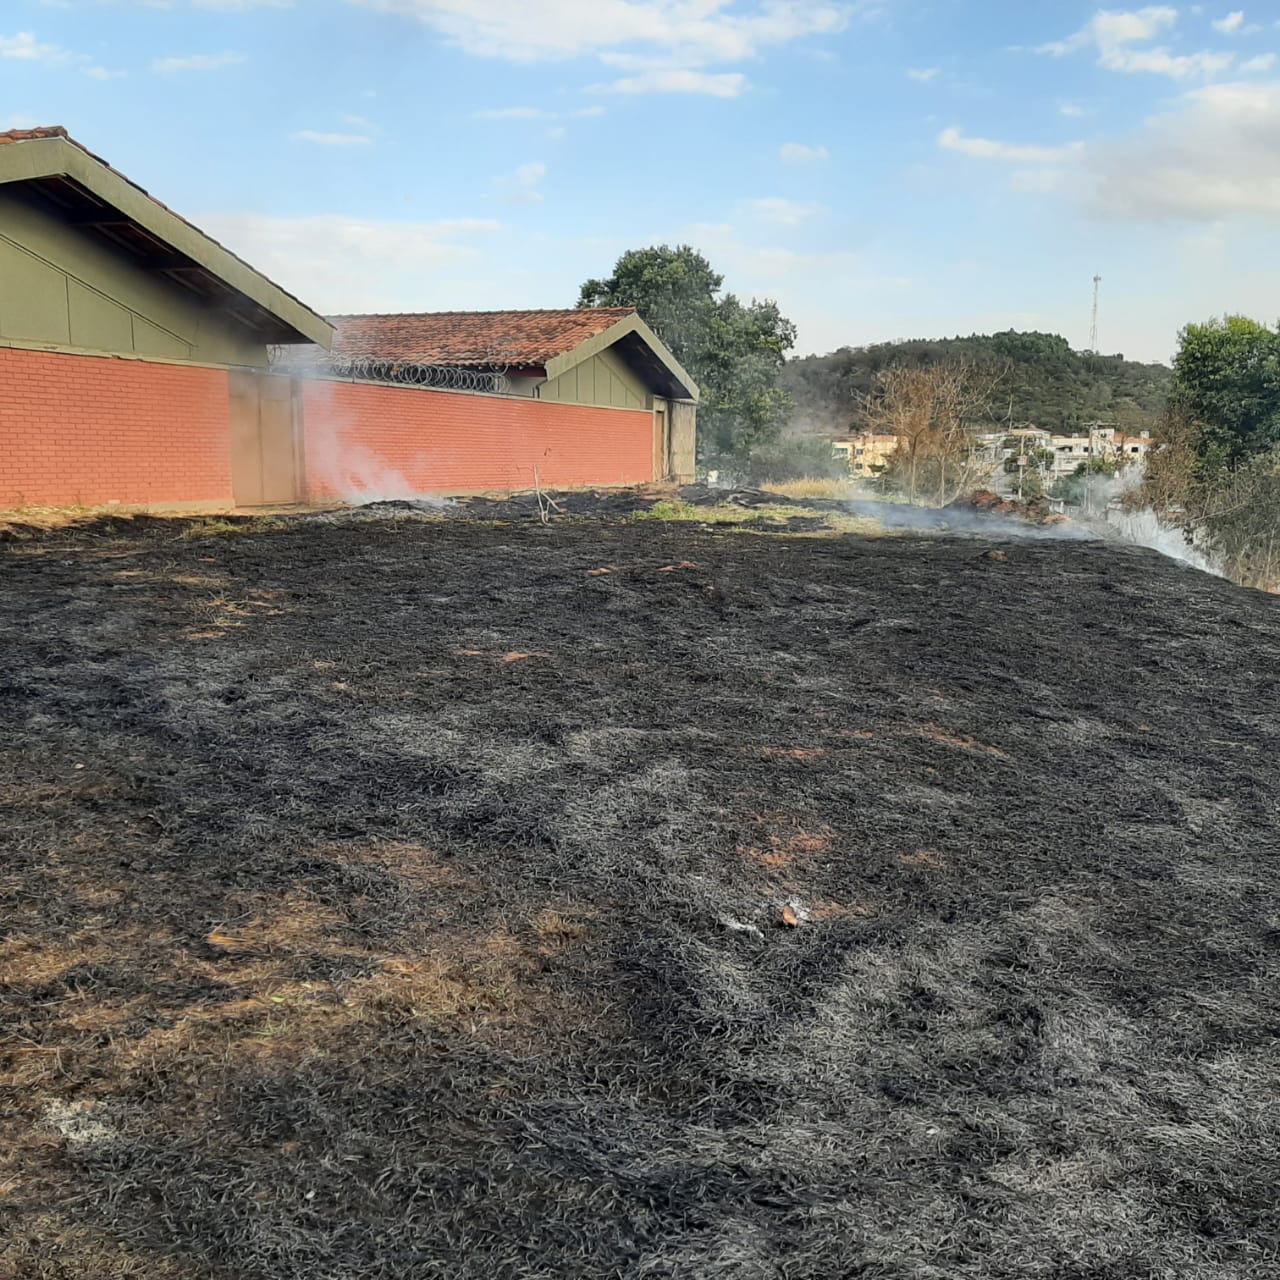 Terreno da escola Gilka Drumond, no Lourdes, é alvo de queimada; funcionários apagam fogo